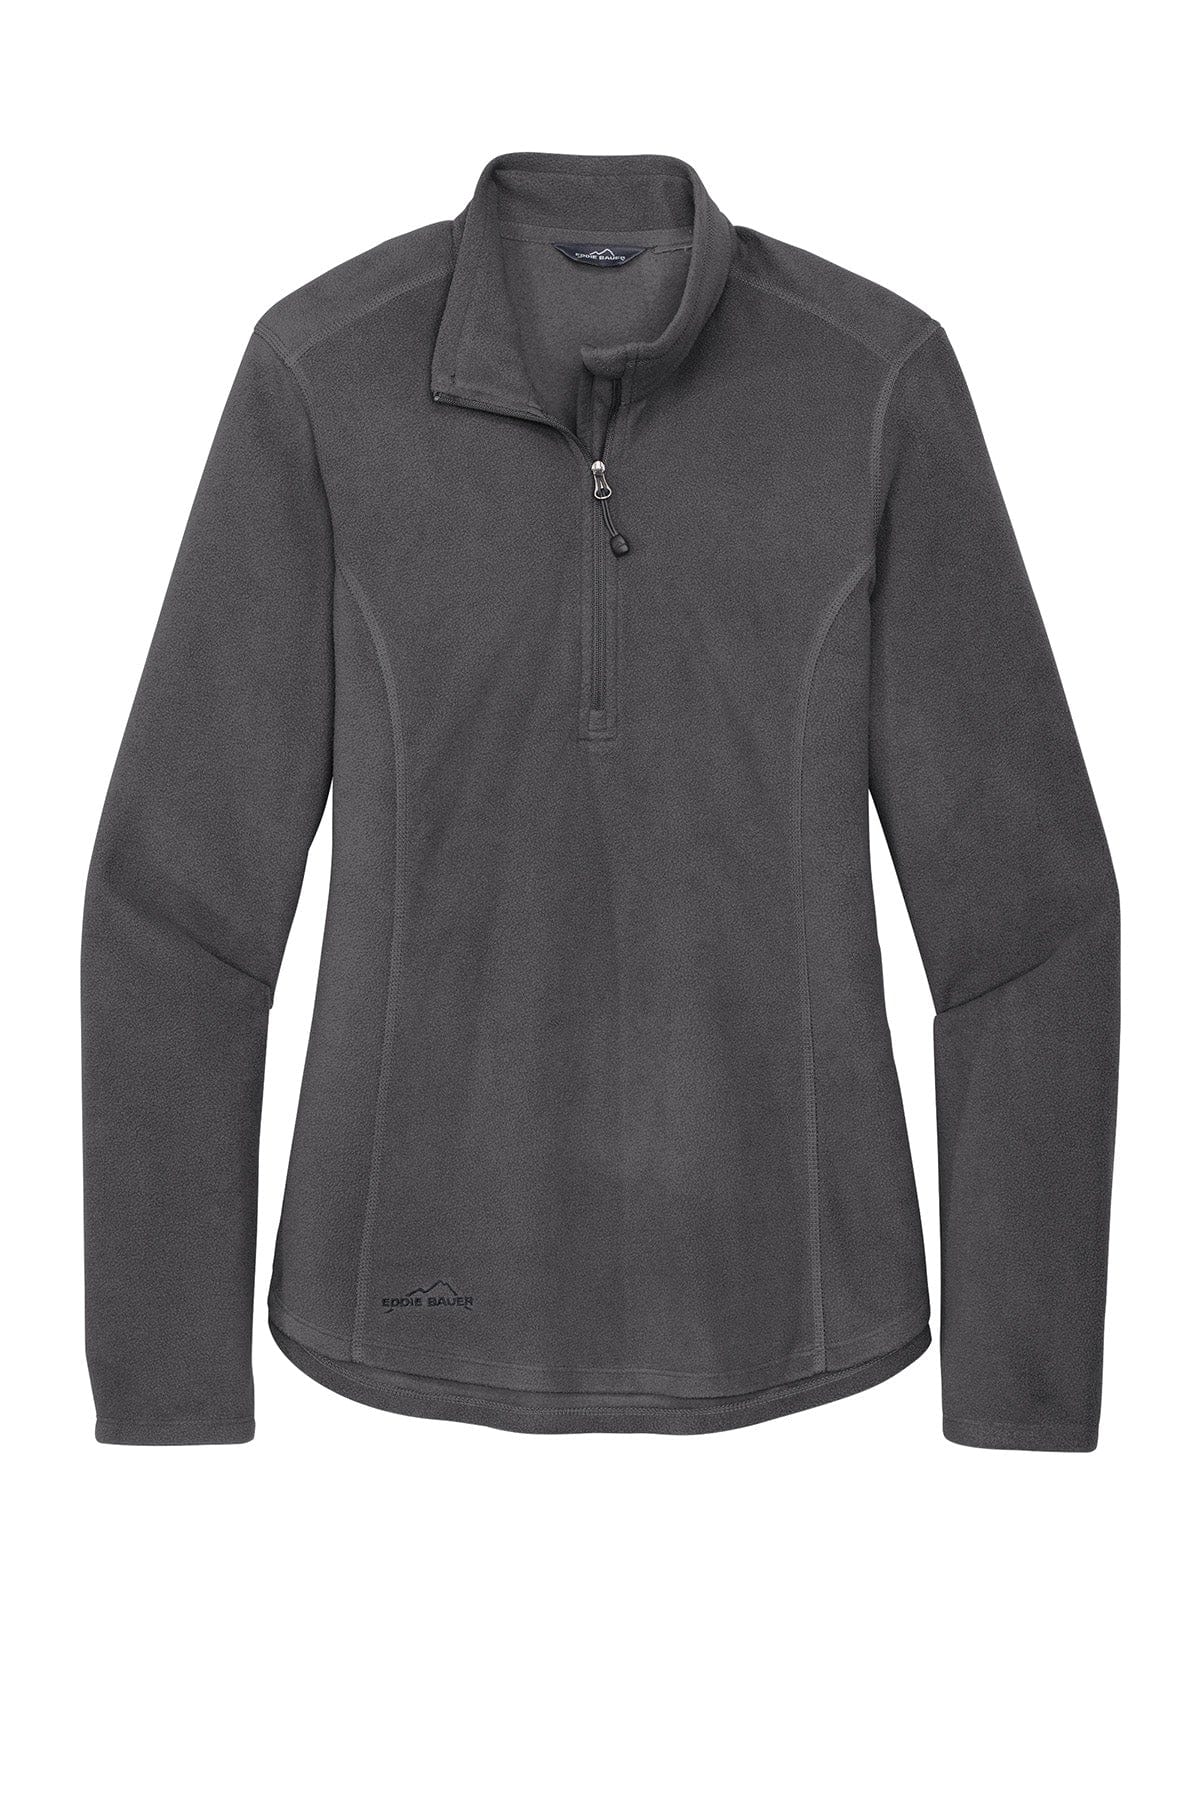 Grey Steel / Women's / XS Custom Eddie Bauer Half-Zip Microfleece Jacket